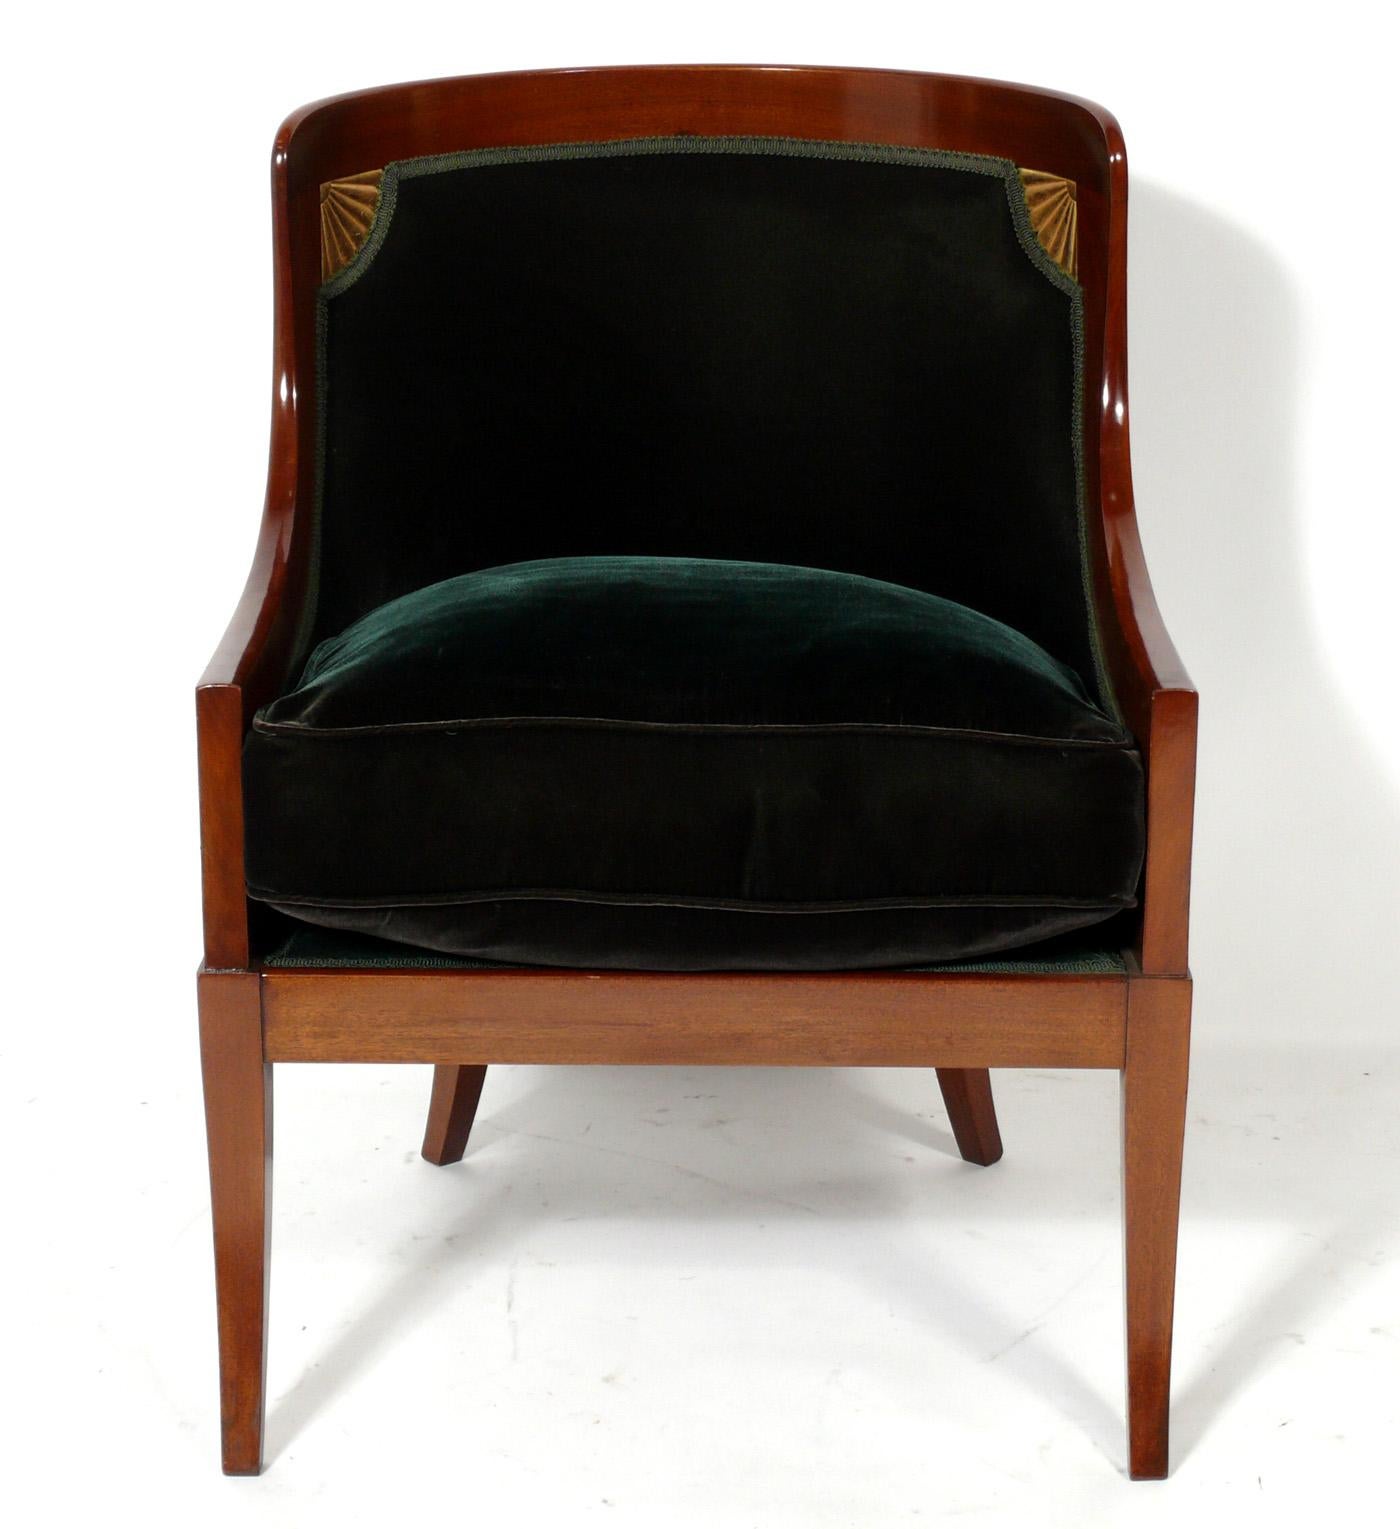 Gilt Elegant Regency Revival Chair in Forest Green Velvet For Sale